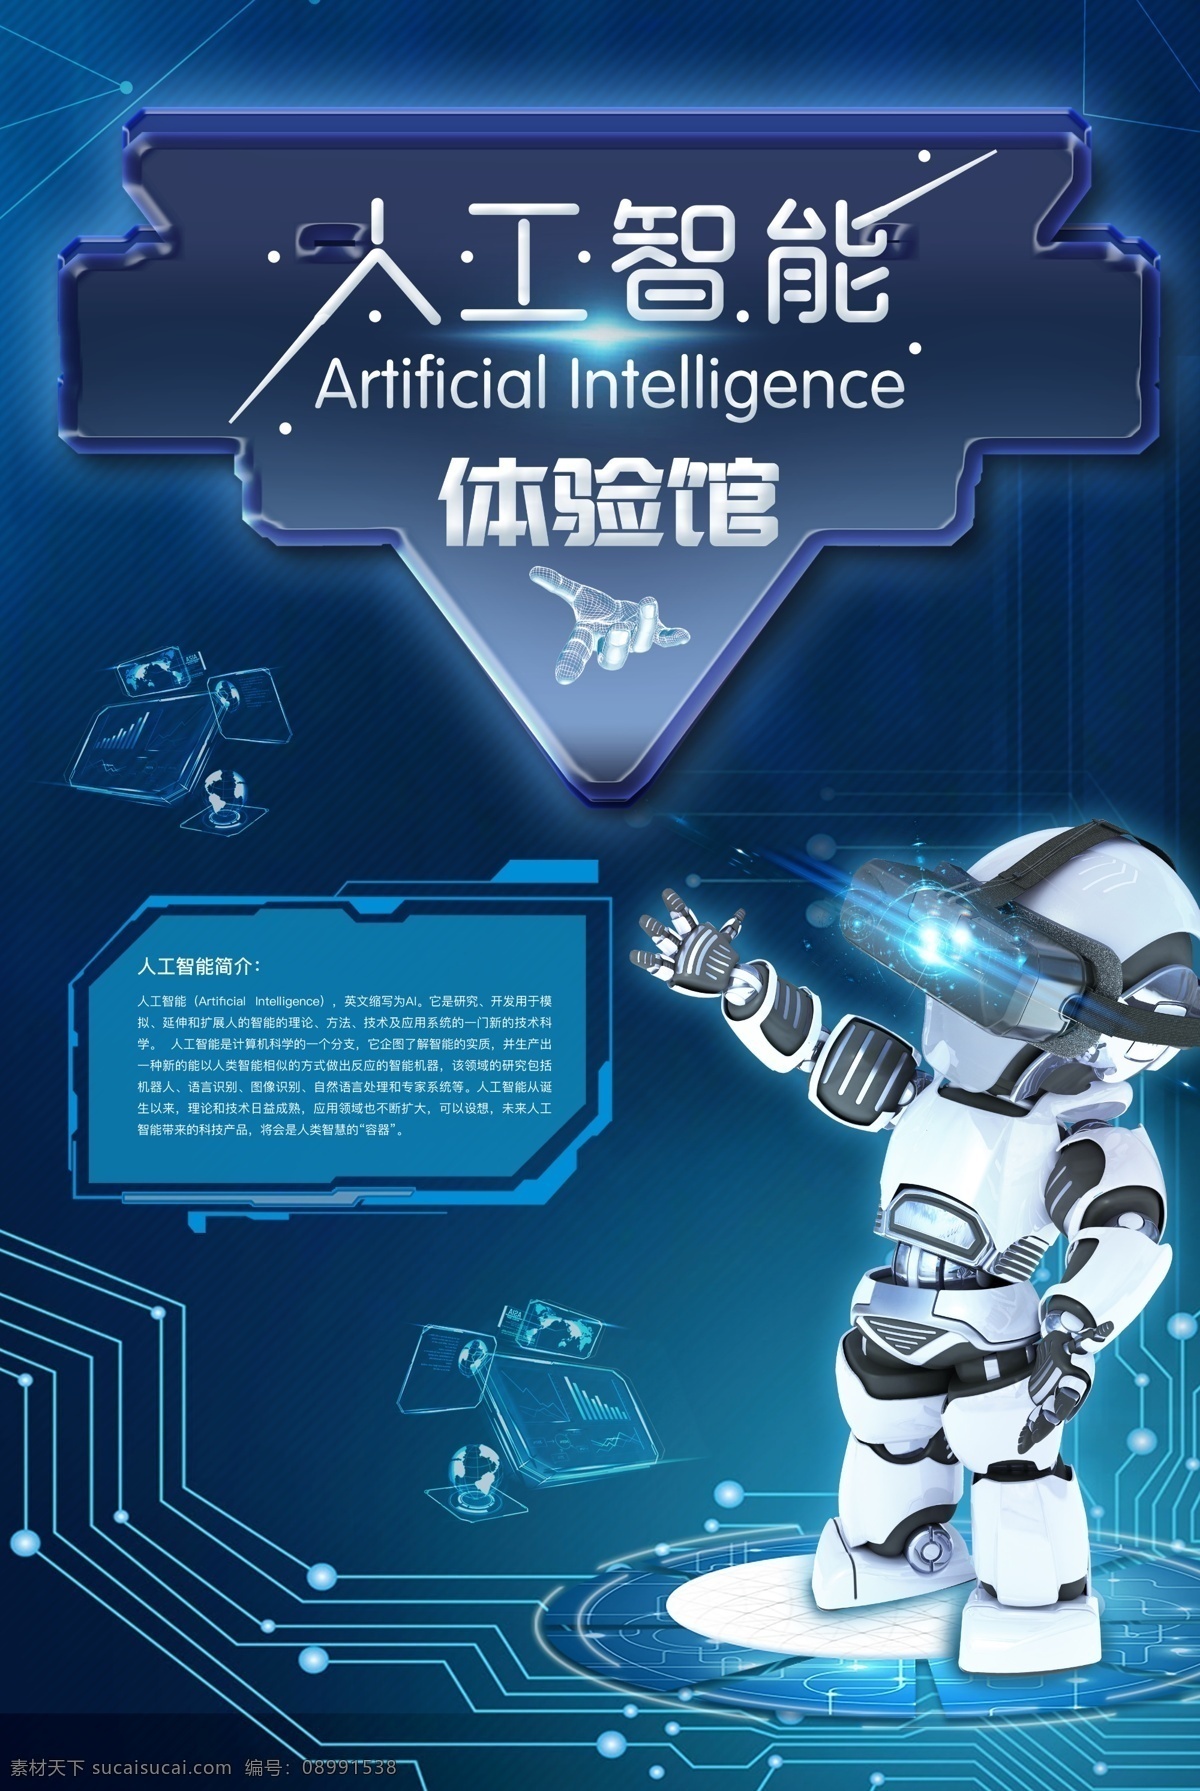 蓝色 创意 人工智能 海报 机器人海报 梦幻科技 蓝色创意 ai智能 科技海报展板 几何梦幻 机器人时代 引领未来科技 人与机器 人工智能时代 vr体验 博览会